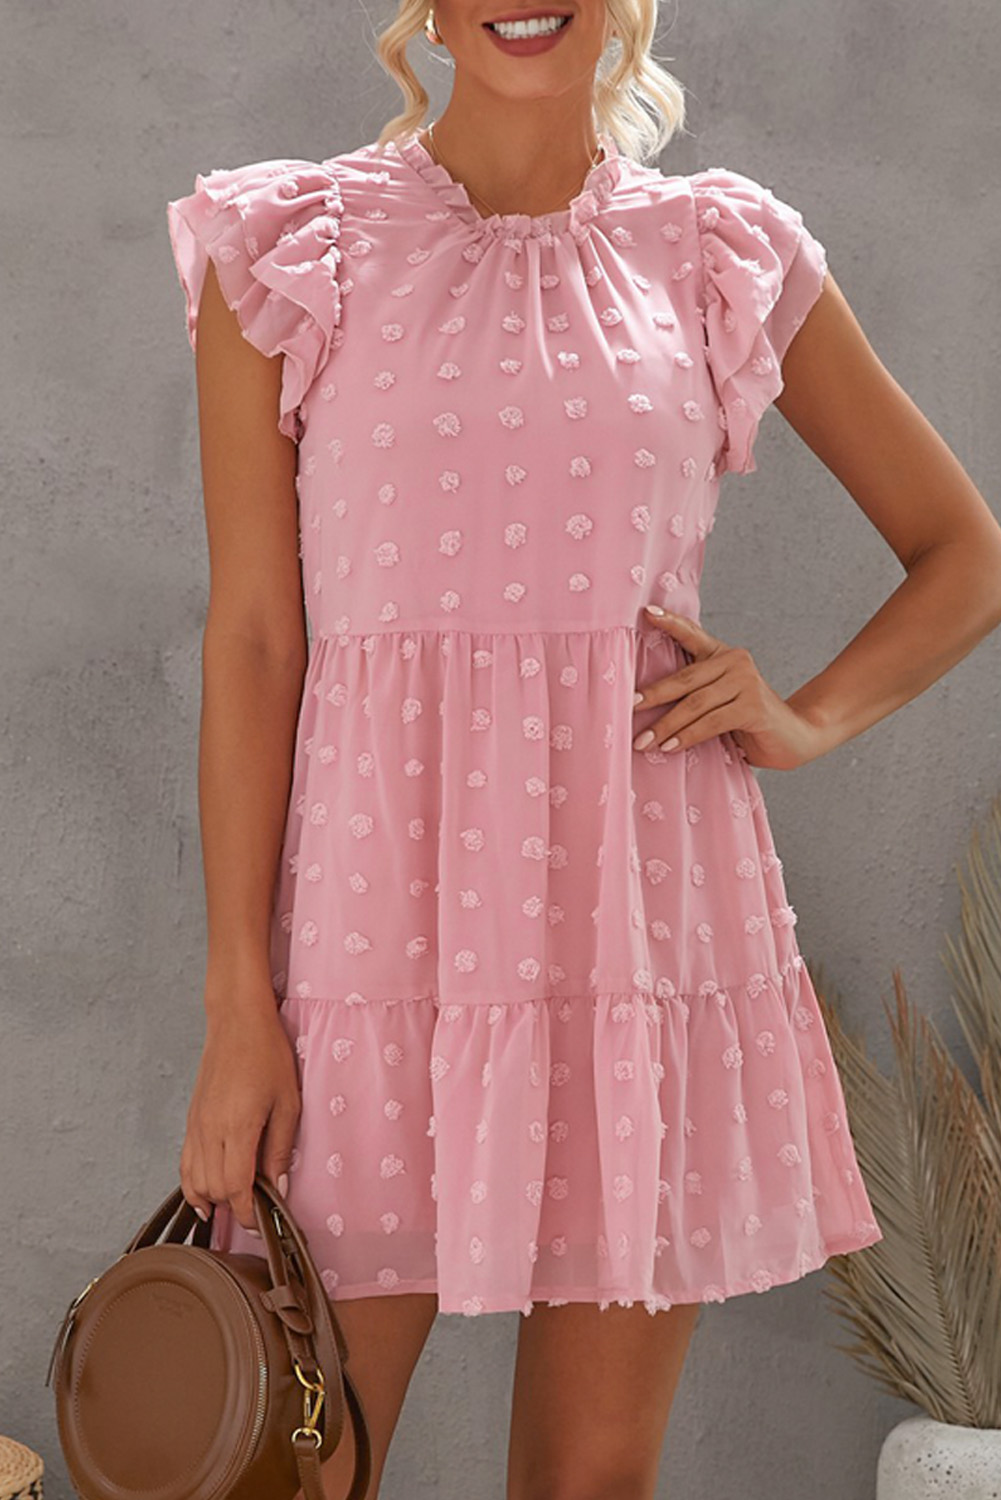 Pink Swiss Dot Layered Mini Dress - (US 4-6)S